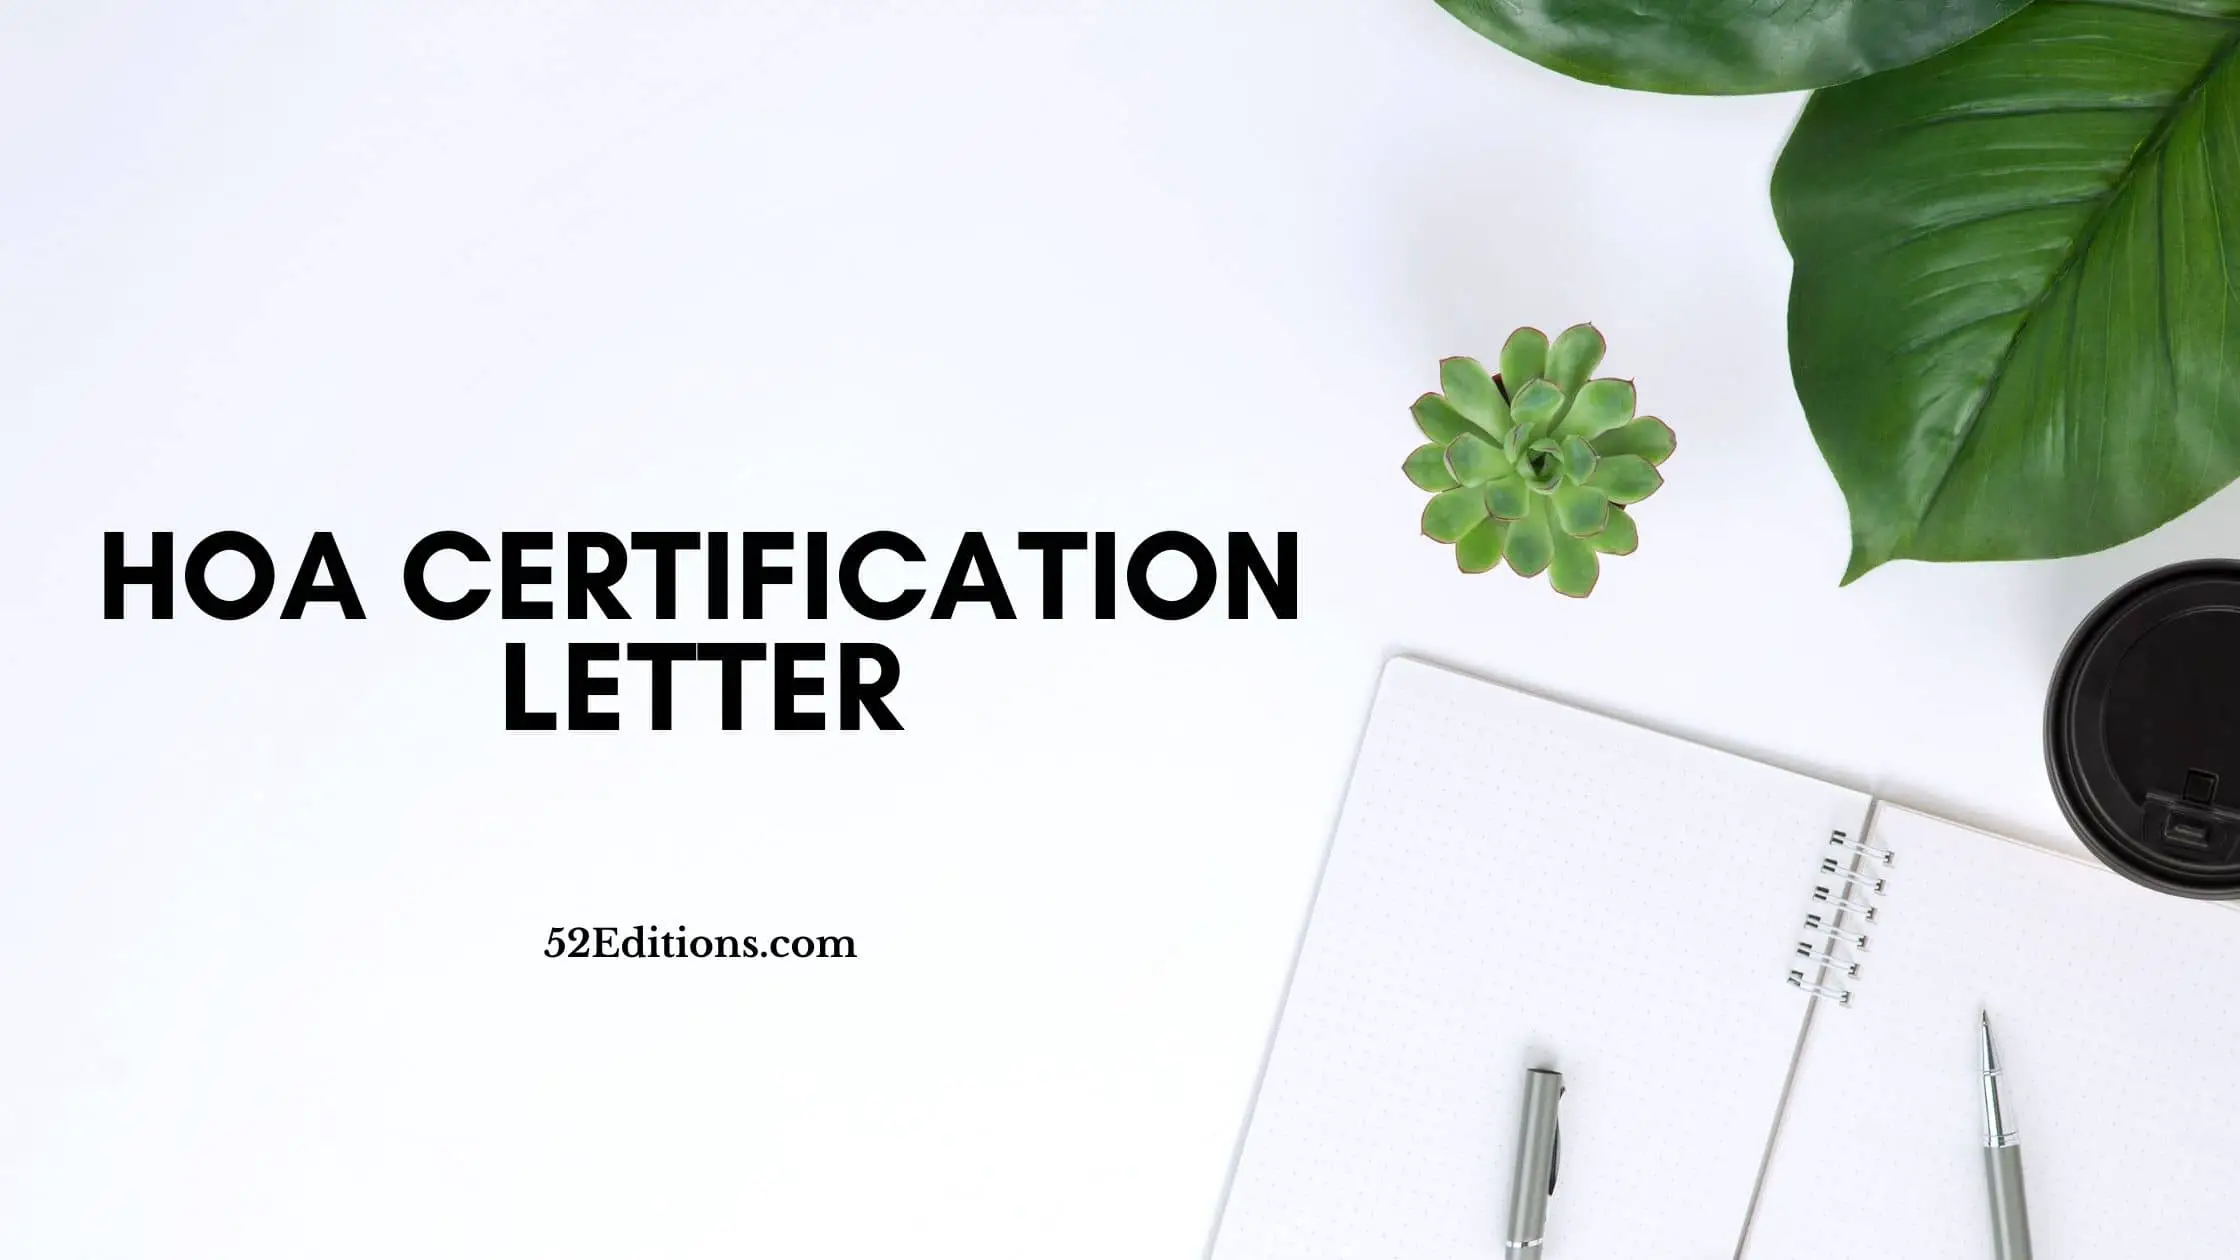 HOA Certification Letter // FREE Letter Templates